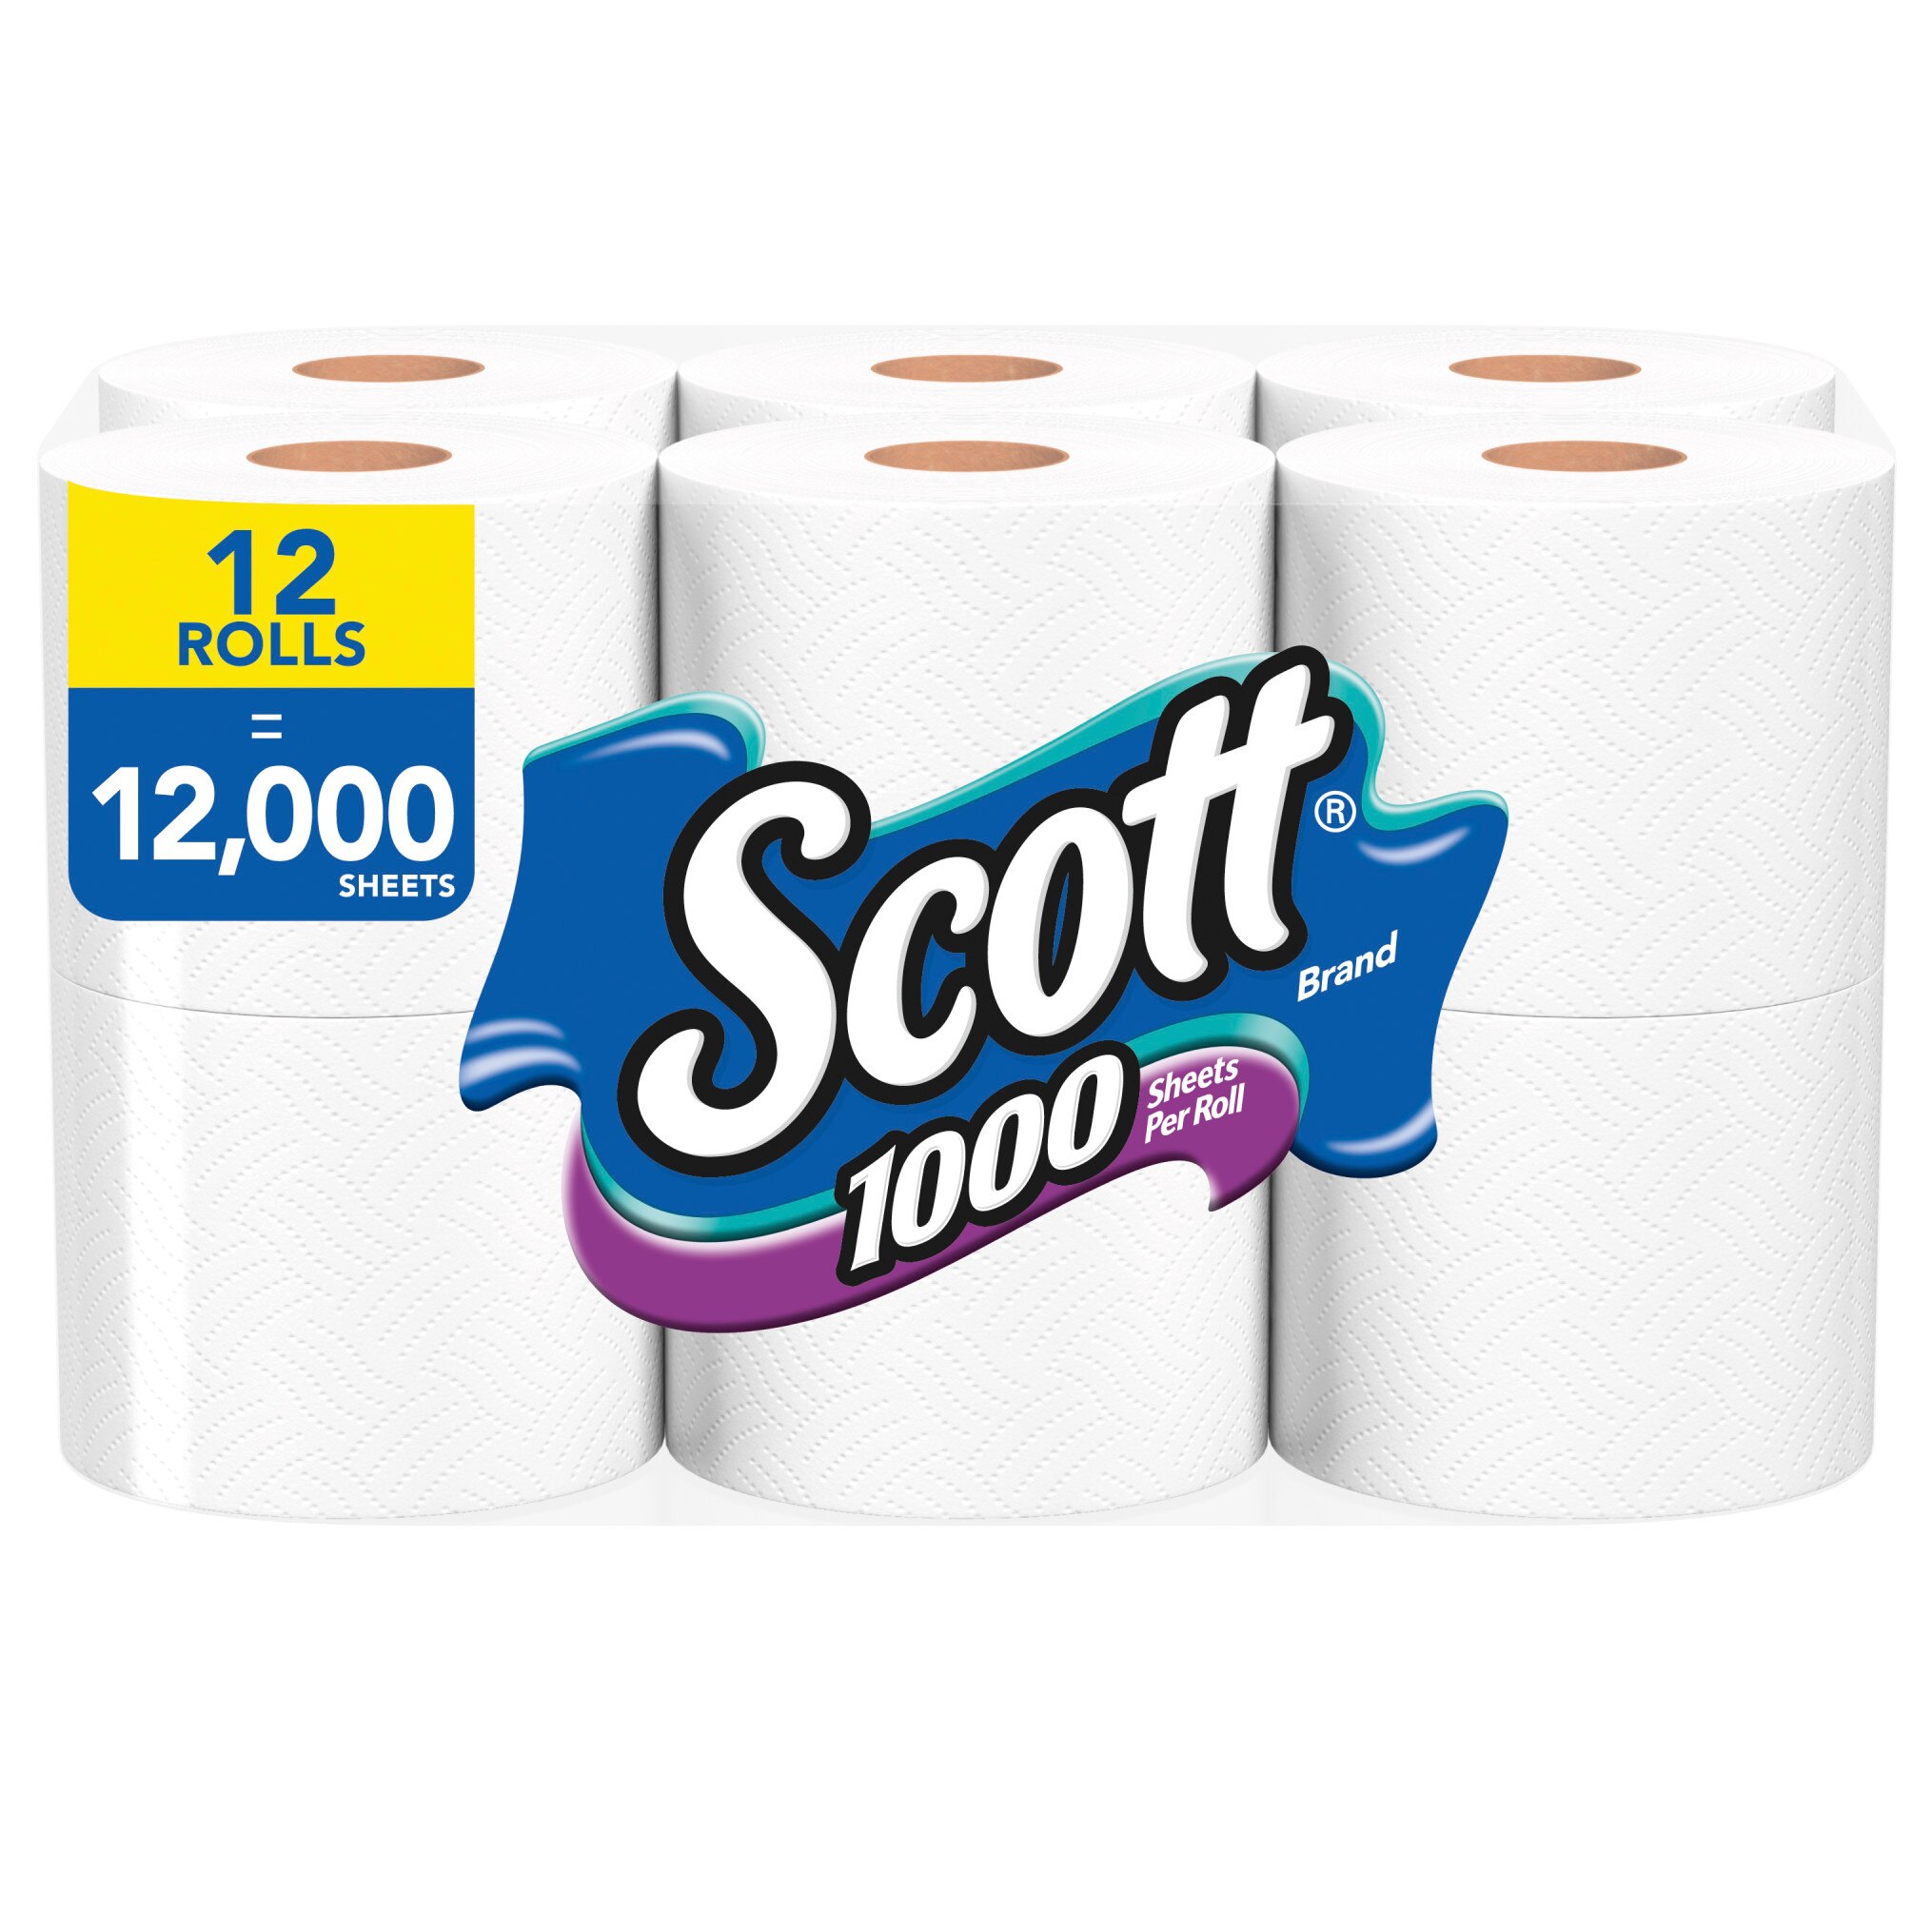 Scott 1000 Toilet Paper, 12 Regular Rolls, Septic-Safe, 1-Ply Toilet Tissue